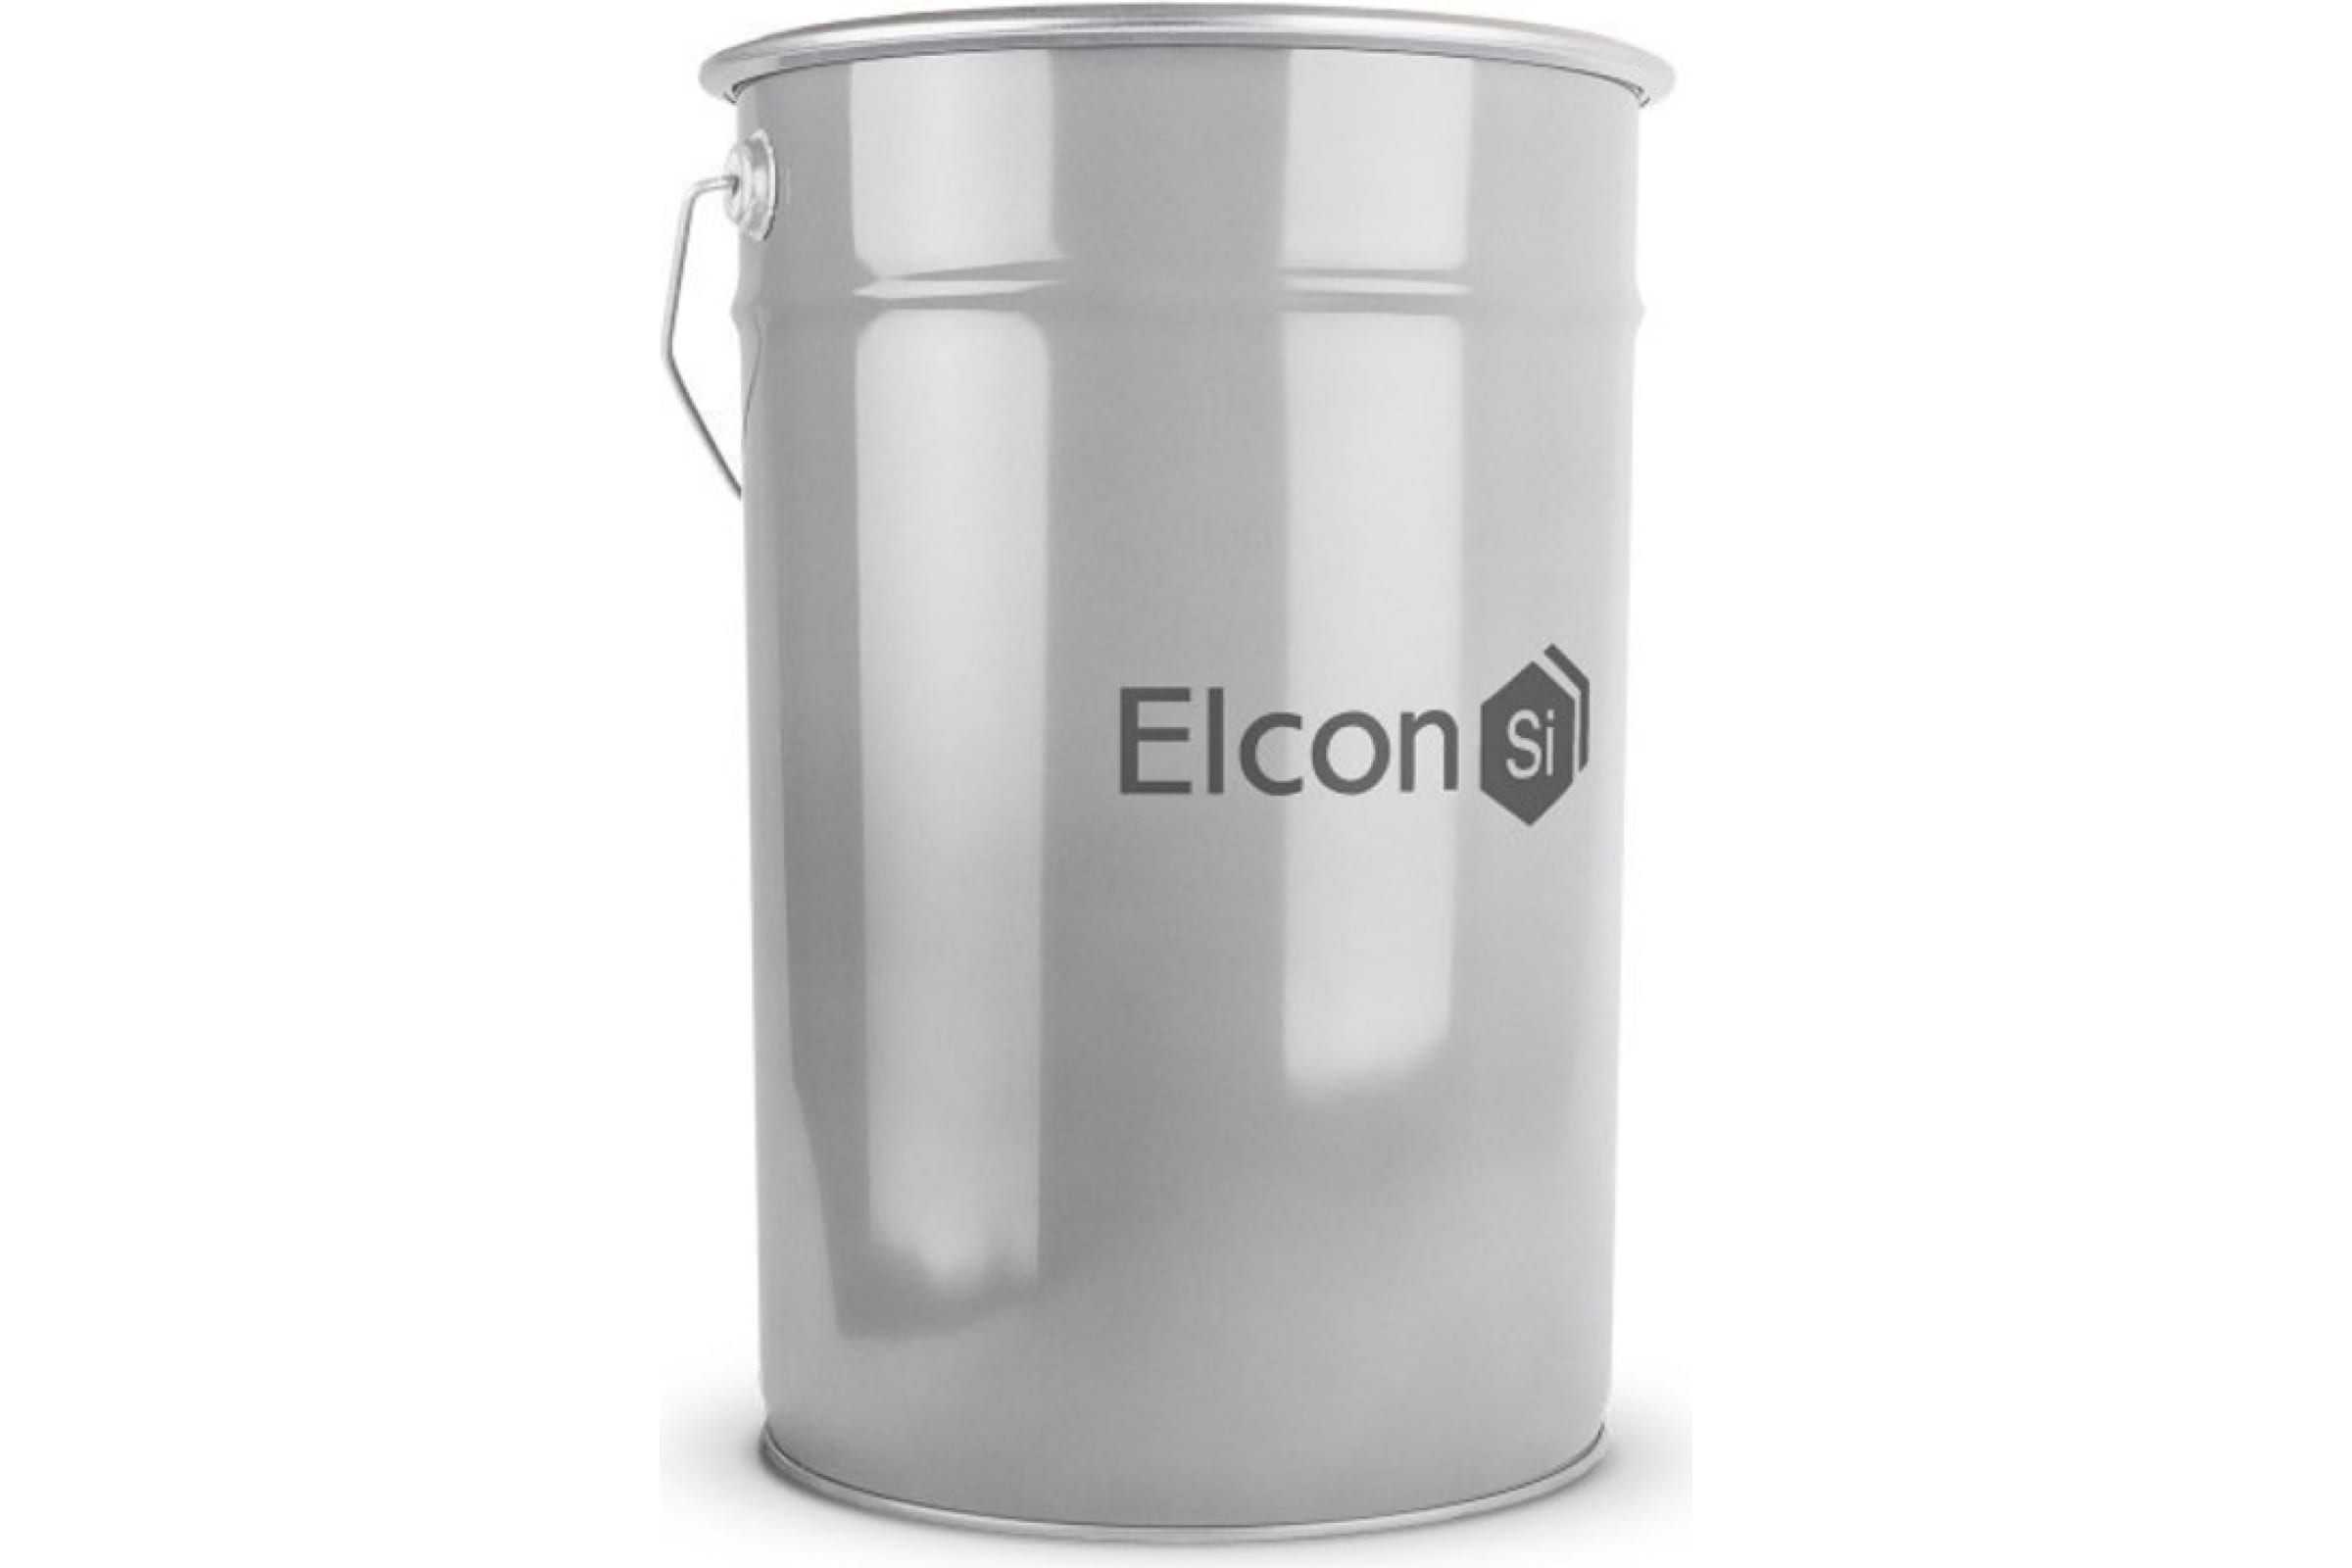 Elcon Термостойкая эмаль КО-8101 серебристо-серая 650 градусов, 25 кг 00-00003974